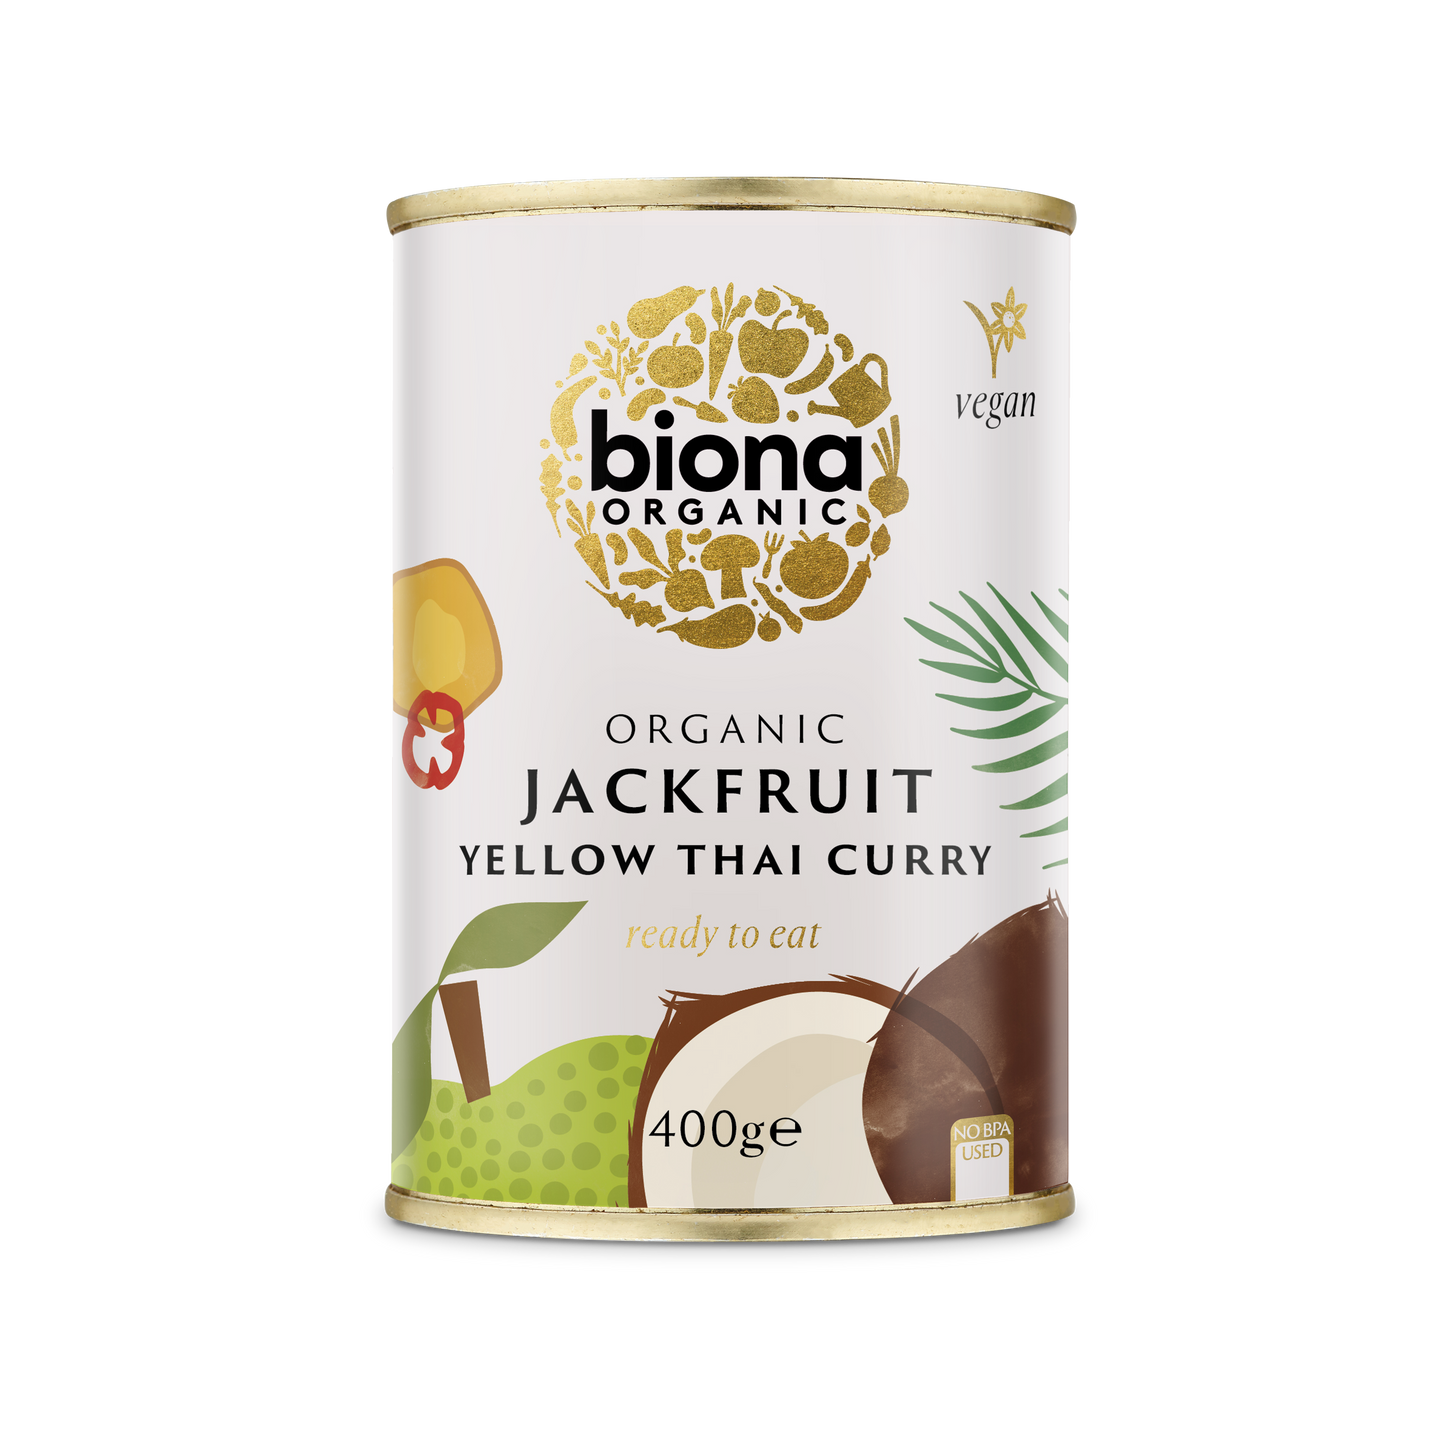 Biona Organic Yellow Thai Curry Jackfruit 400g -Pack of 6